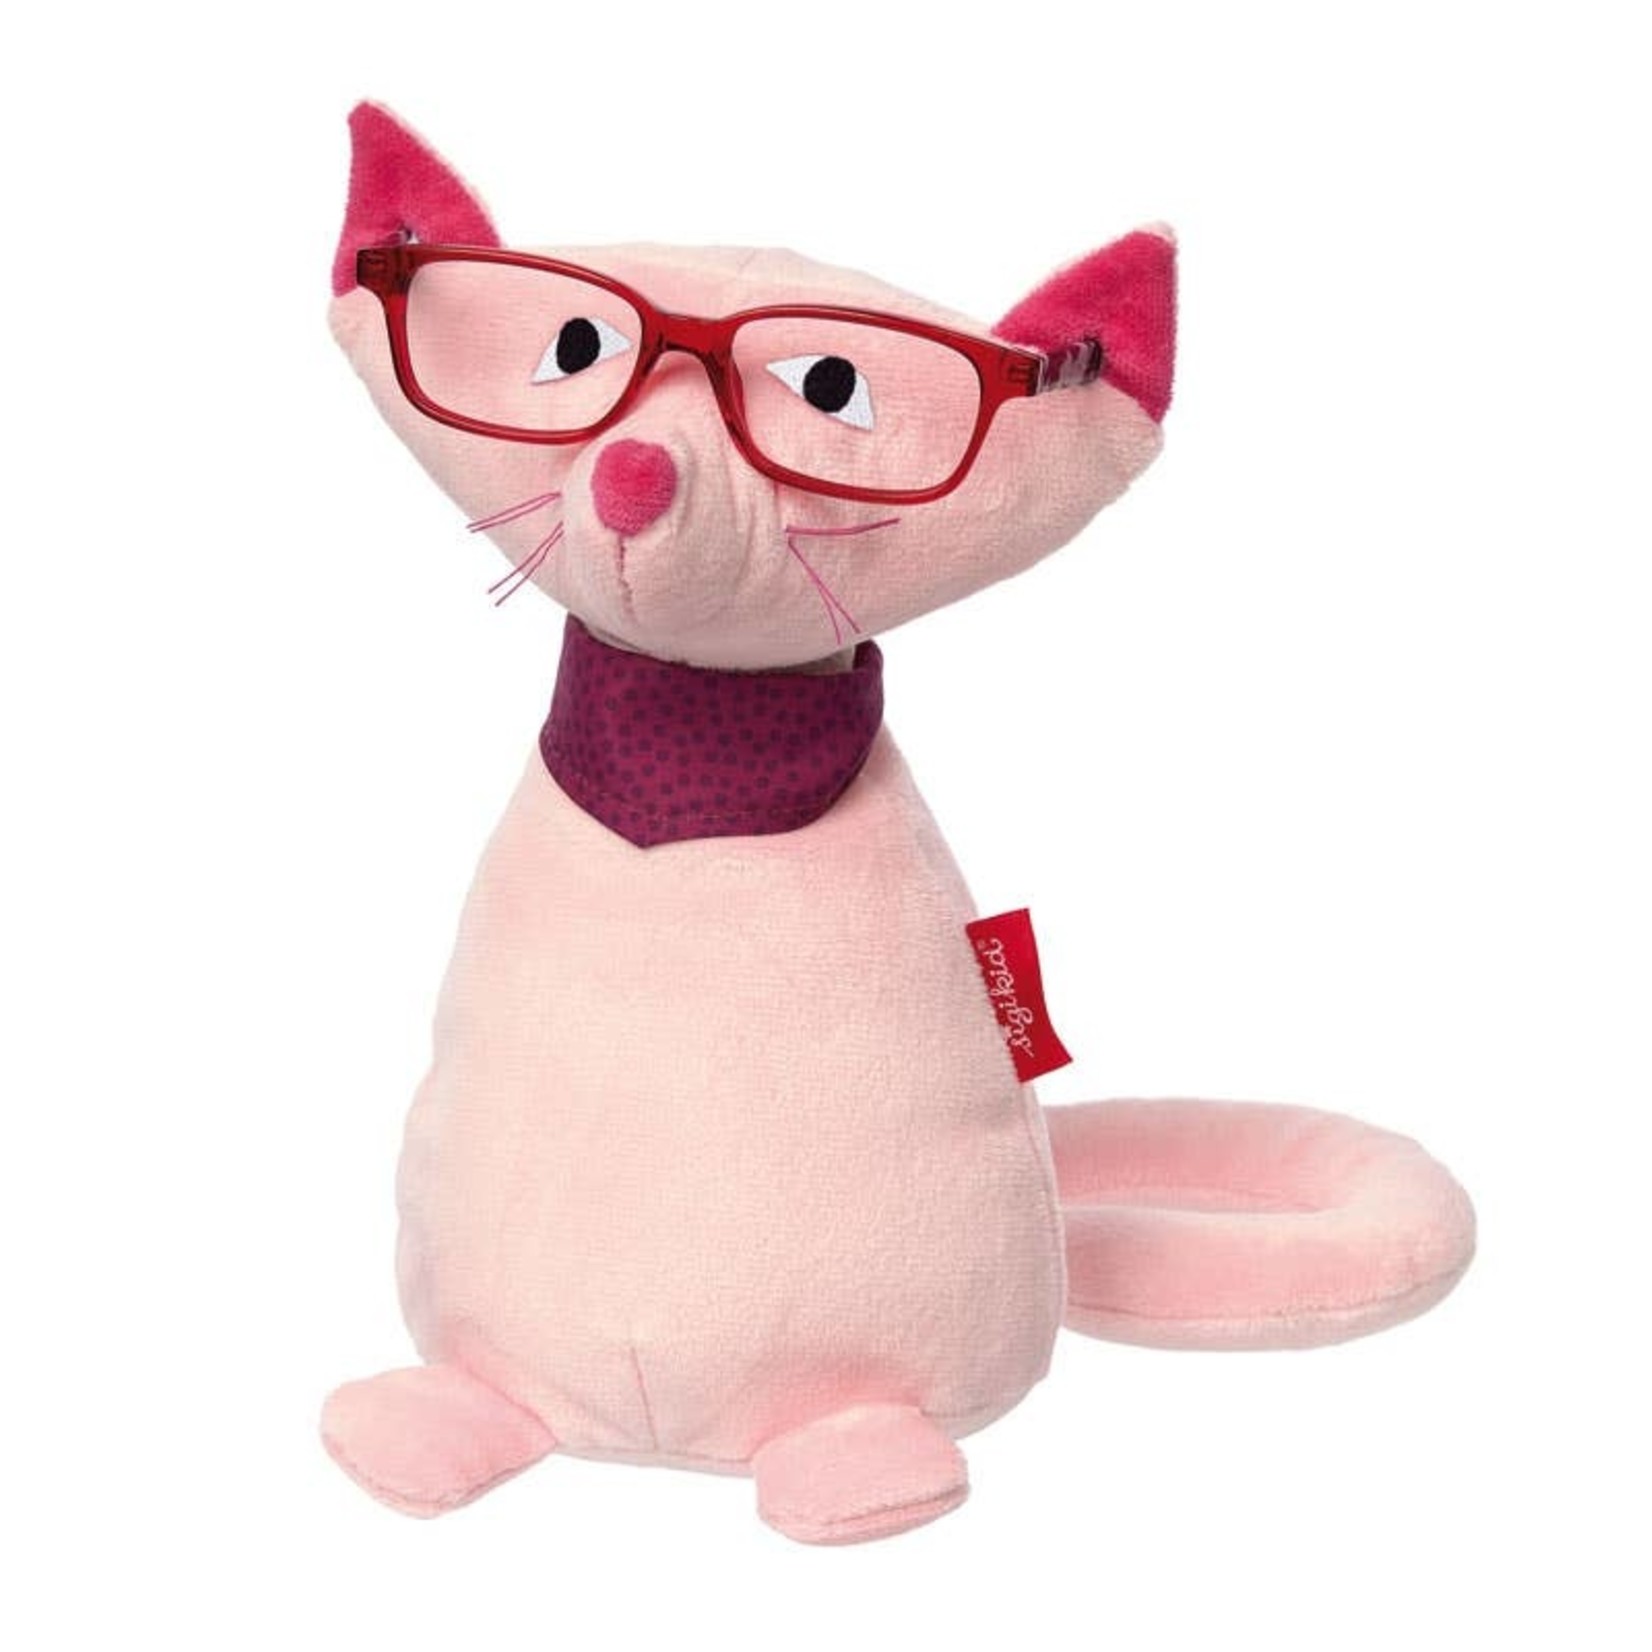 https://cdn.shoplightspeed.com/shops/657021/files/42160584/1652x1652x2/eyeglass-holder-cat.jpg